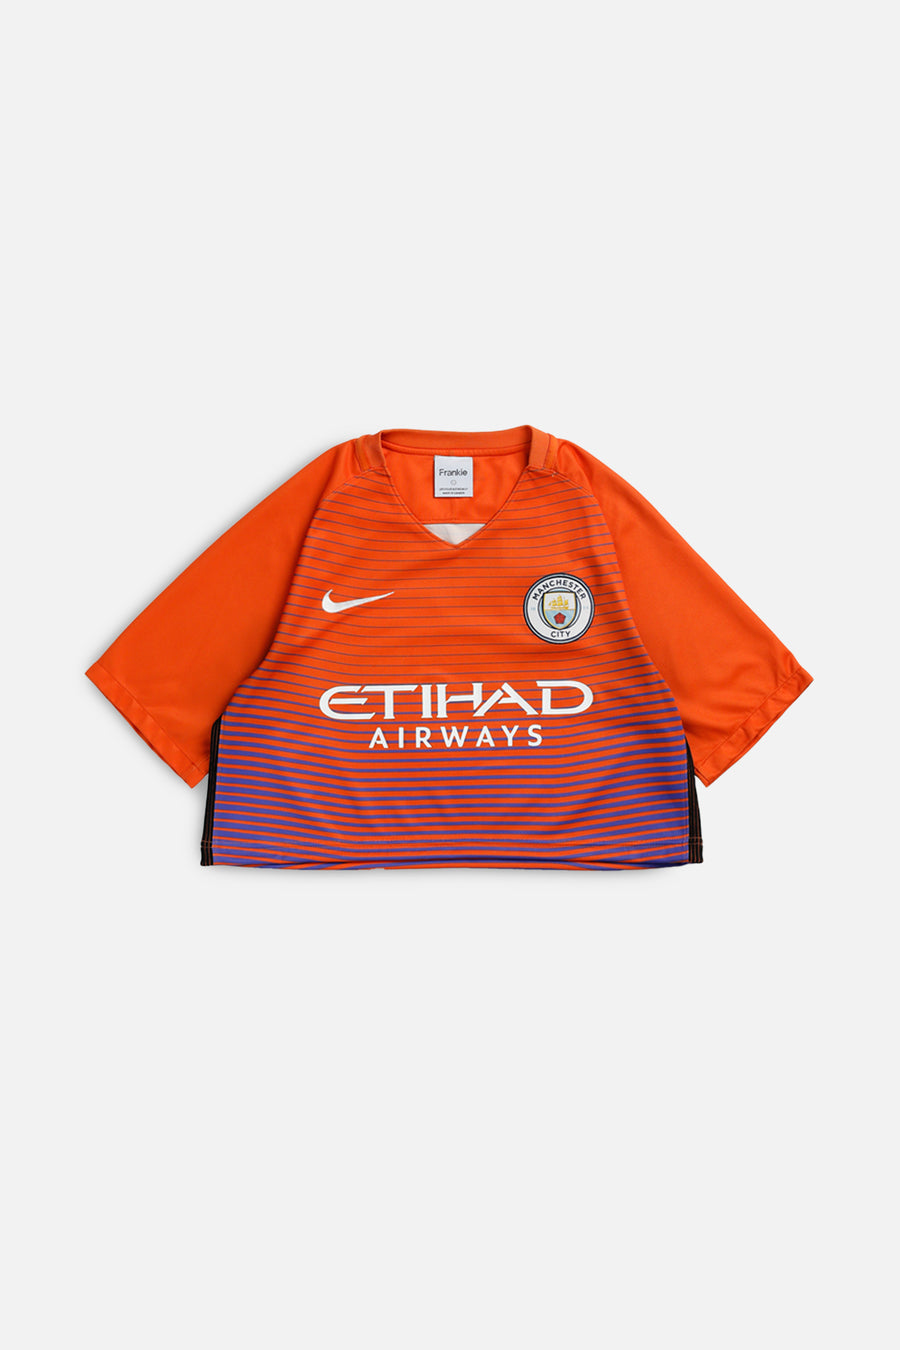 Rework Crop Manchester City Soccer Jersey - L